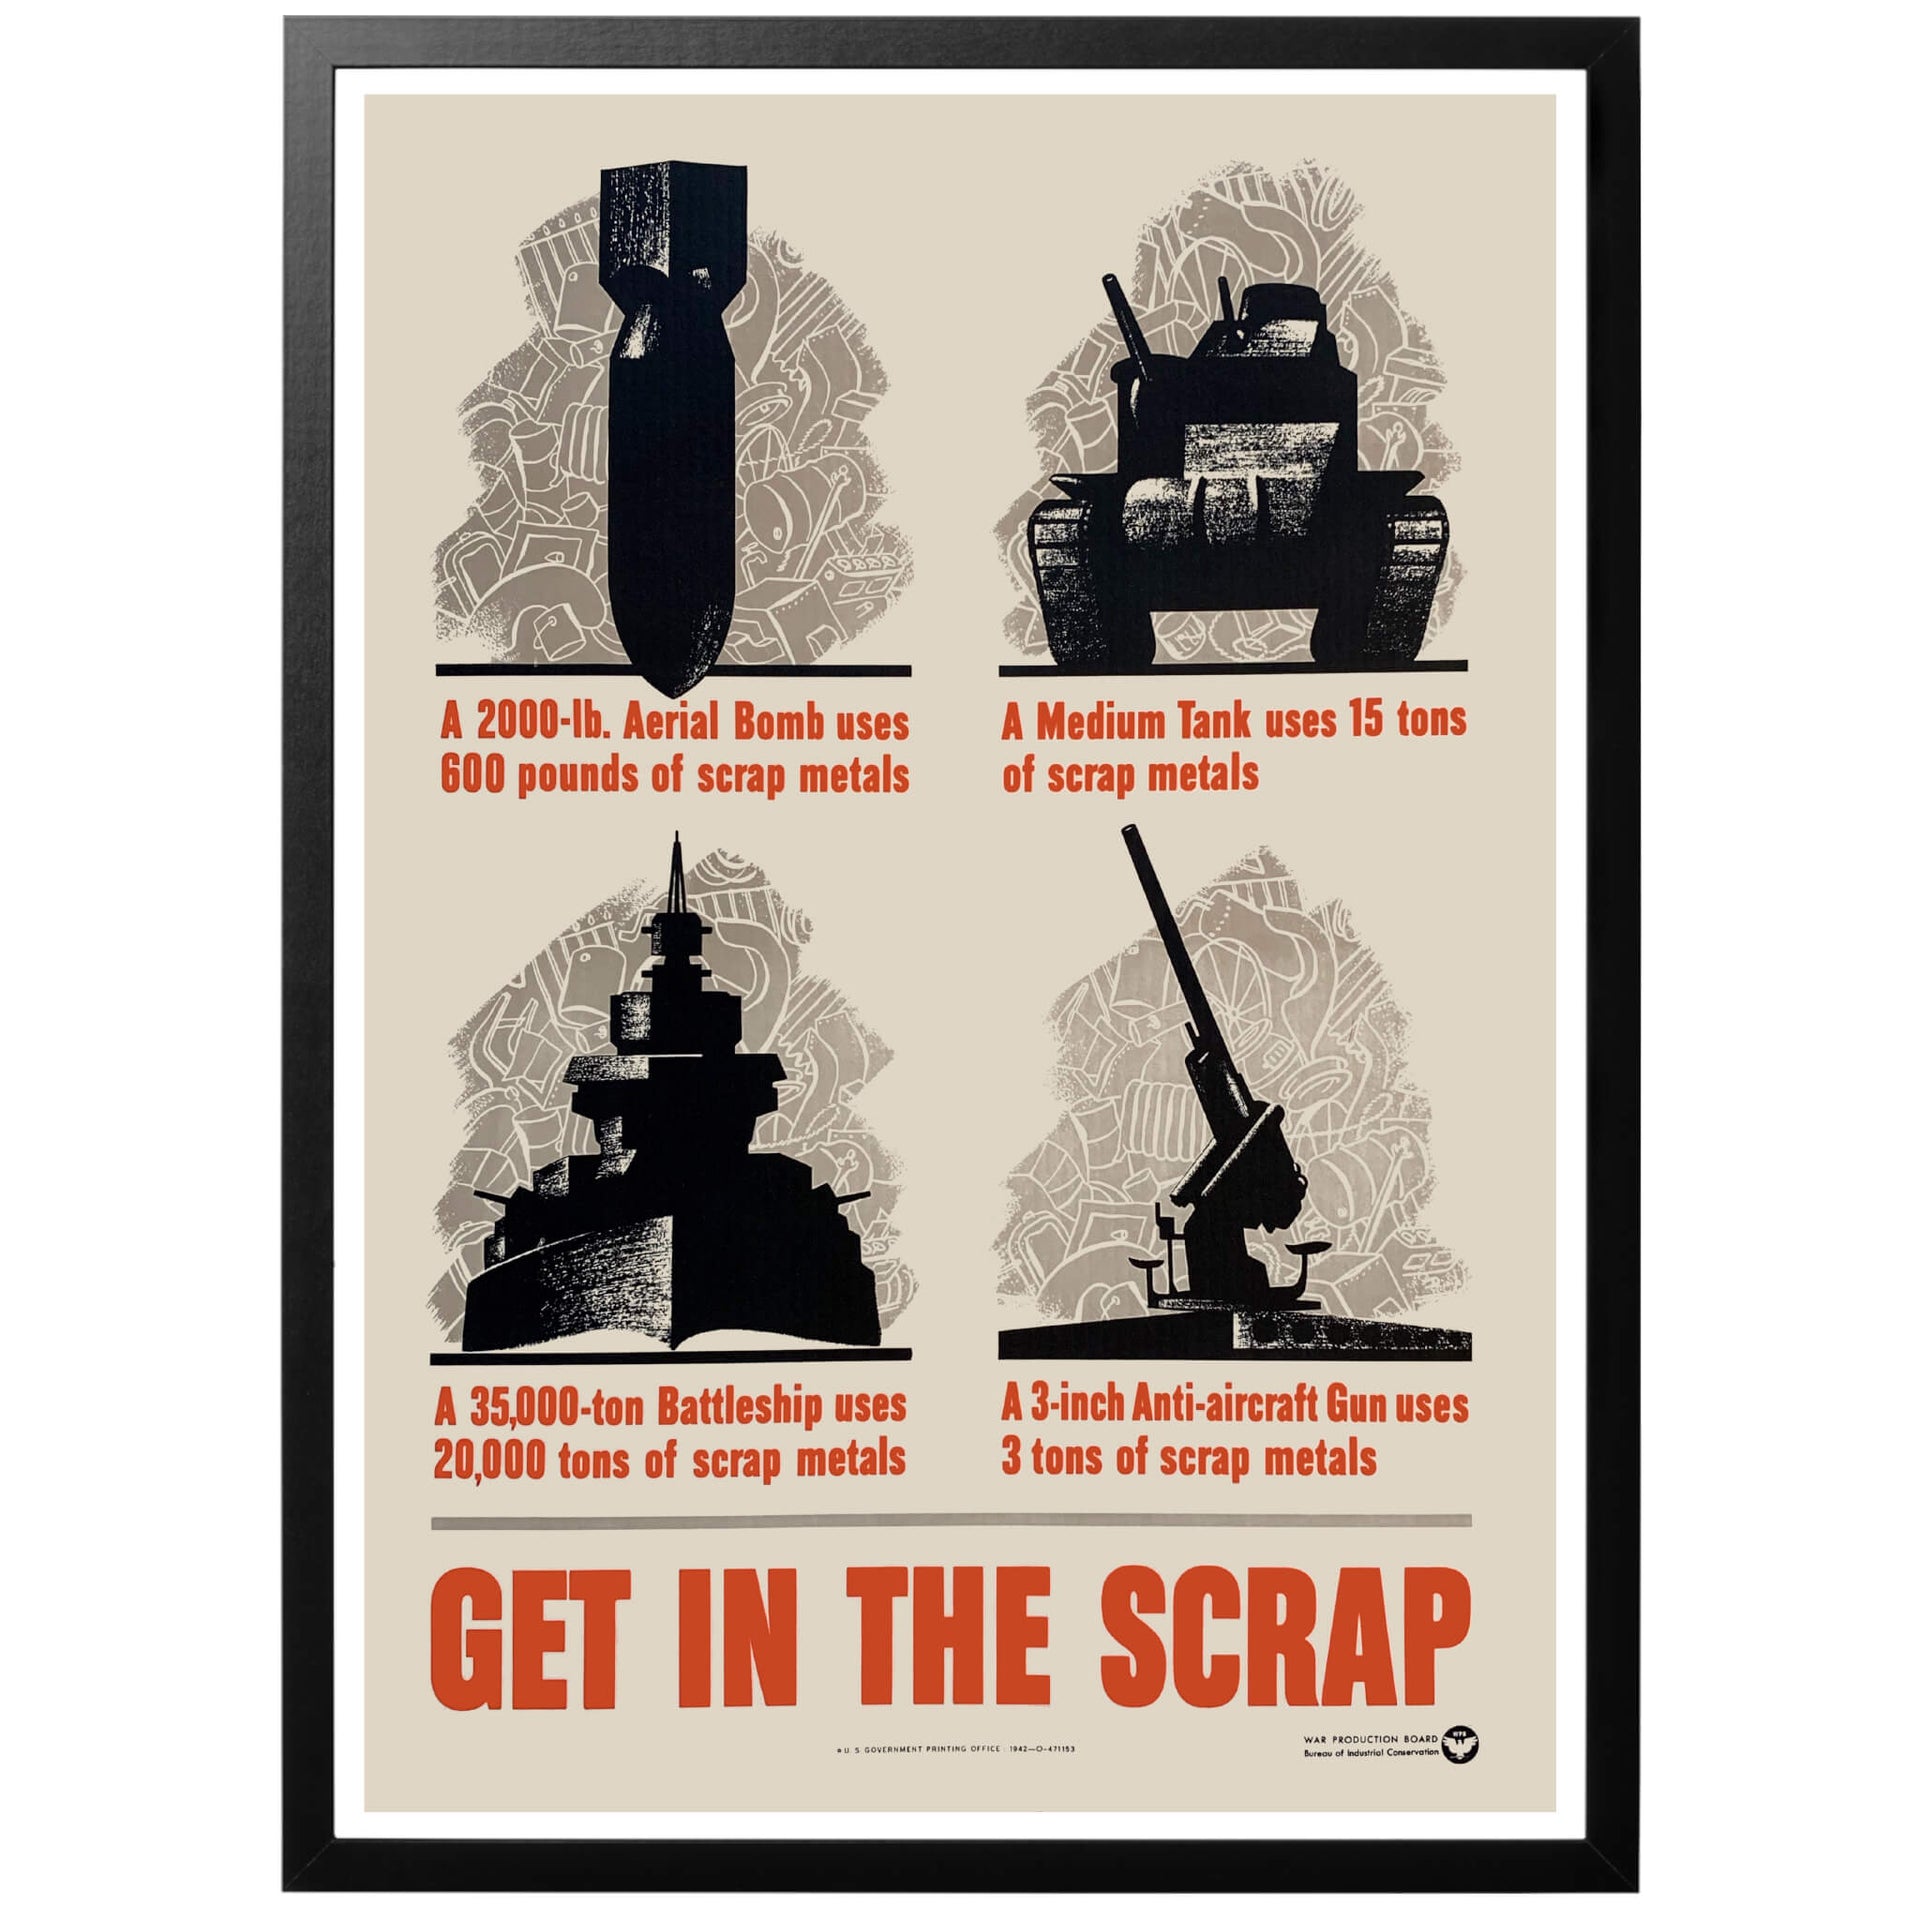 Get in the Scrap Få in skrotet- Amerikansk WWII affisch från 1942 som uppmanar till återvinning av skrotmetall. Vi skickar med PostNord.